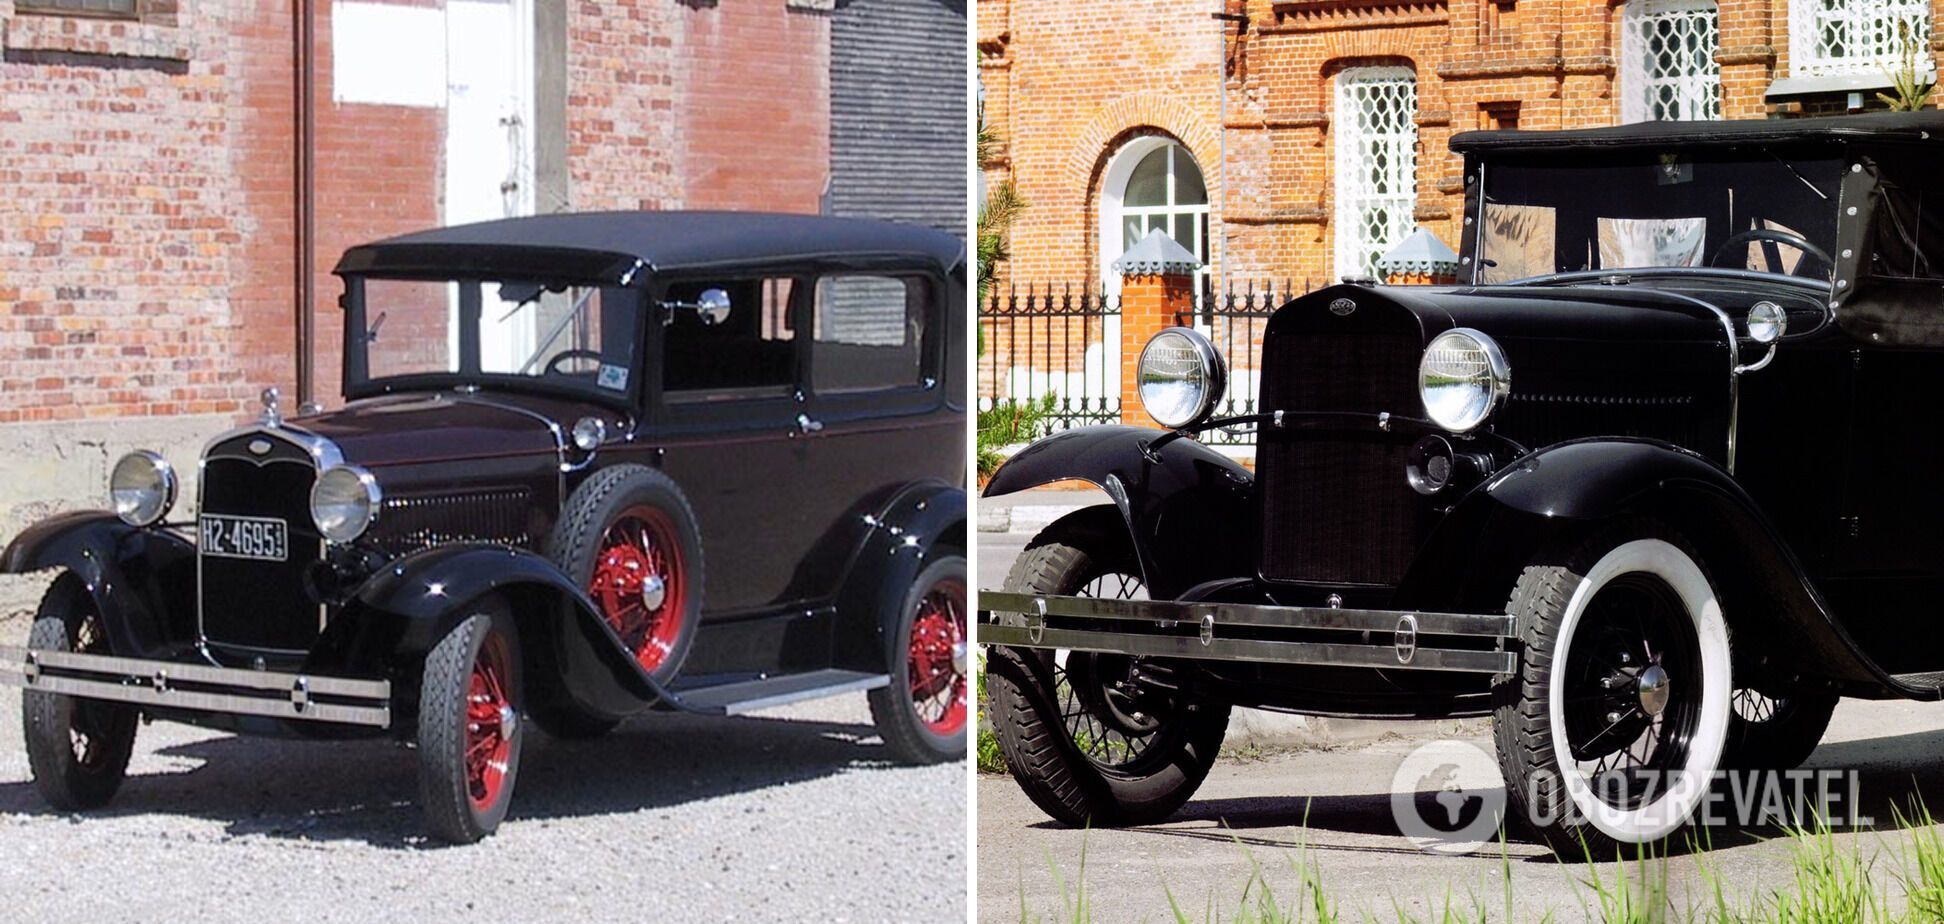 Справа – советский "Газ-А" 1932 года, слева – американский "Ford Model A" 1927 года.